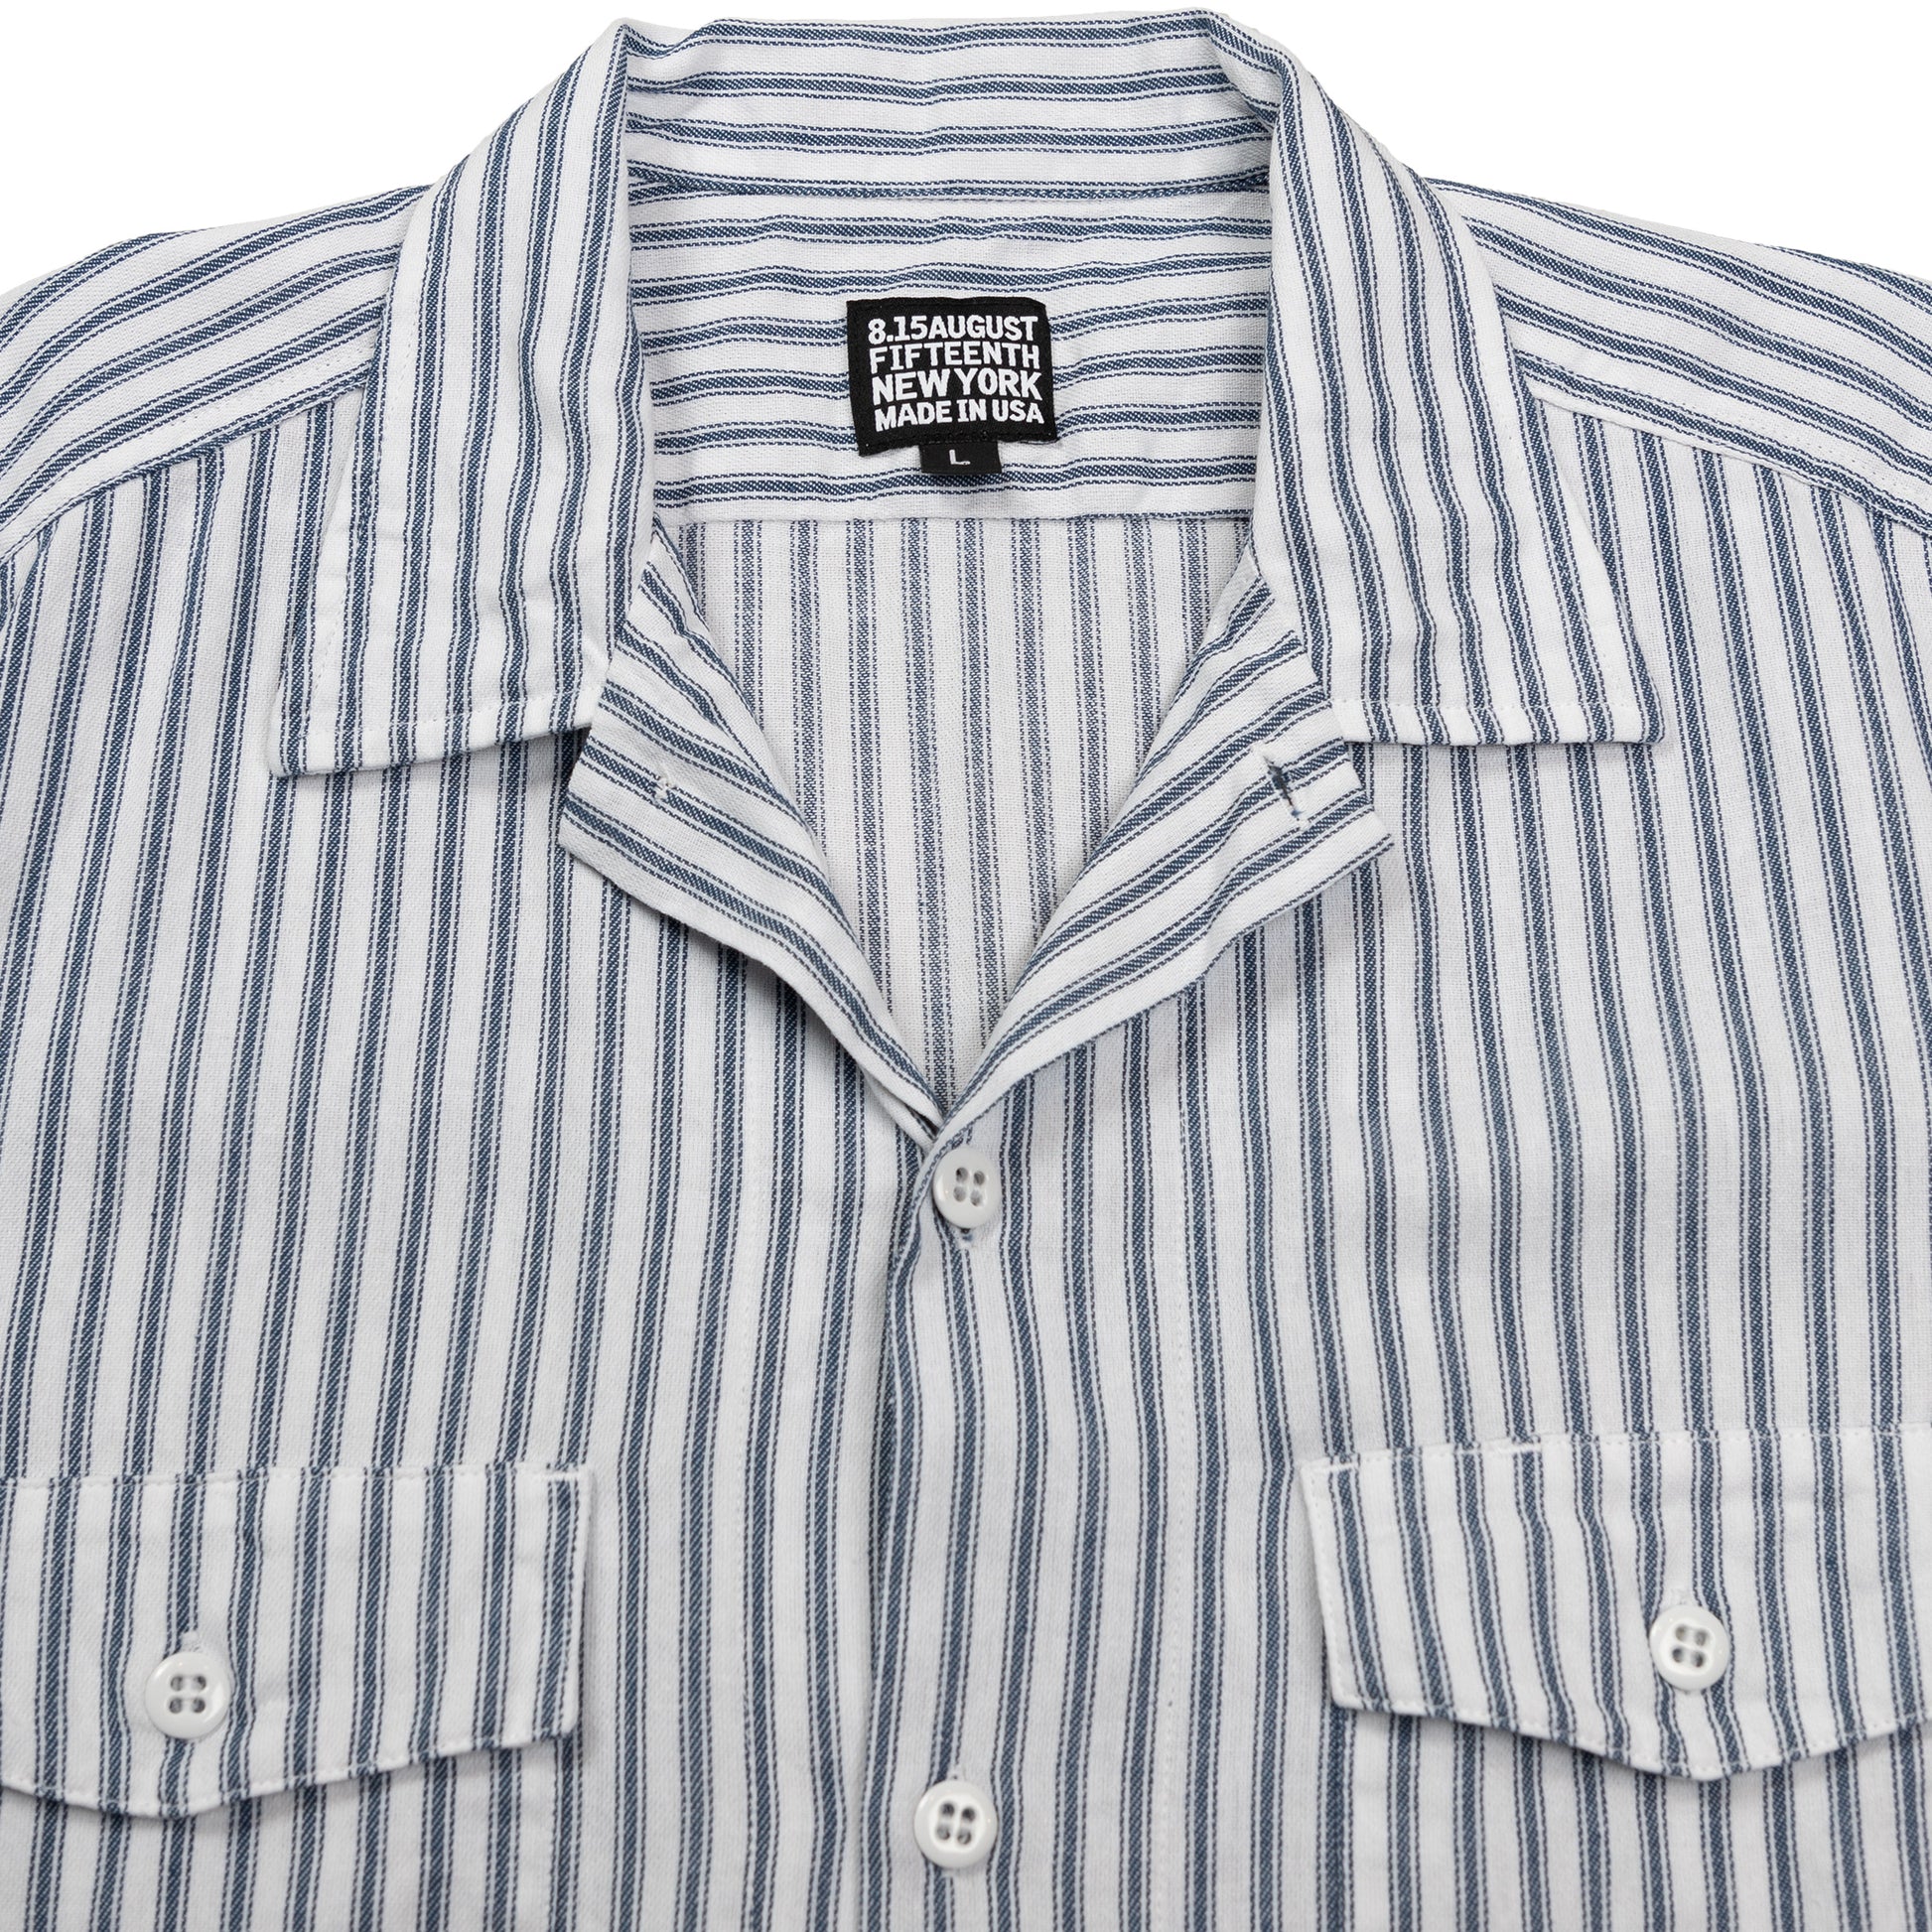 August Fifteenth Detroit Shirt Ticking Stripe Blue Collar